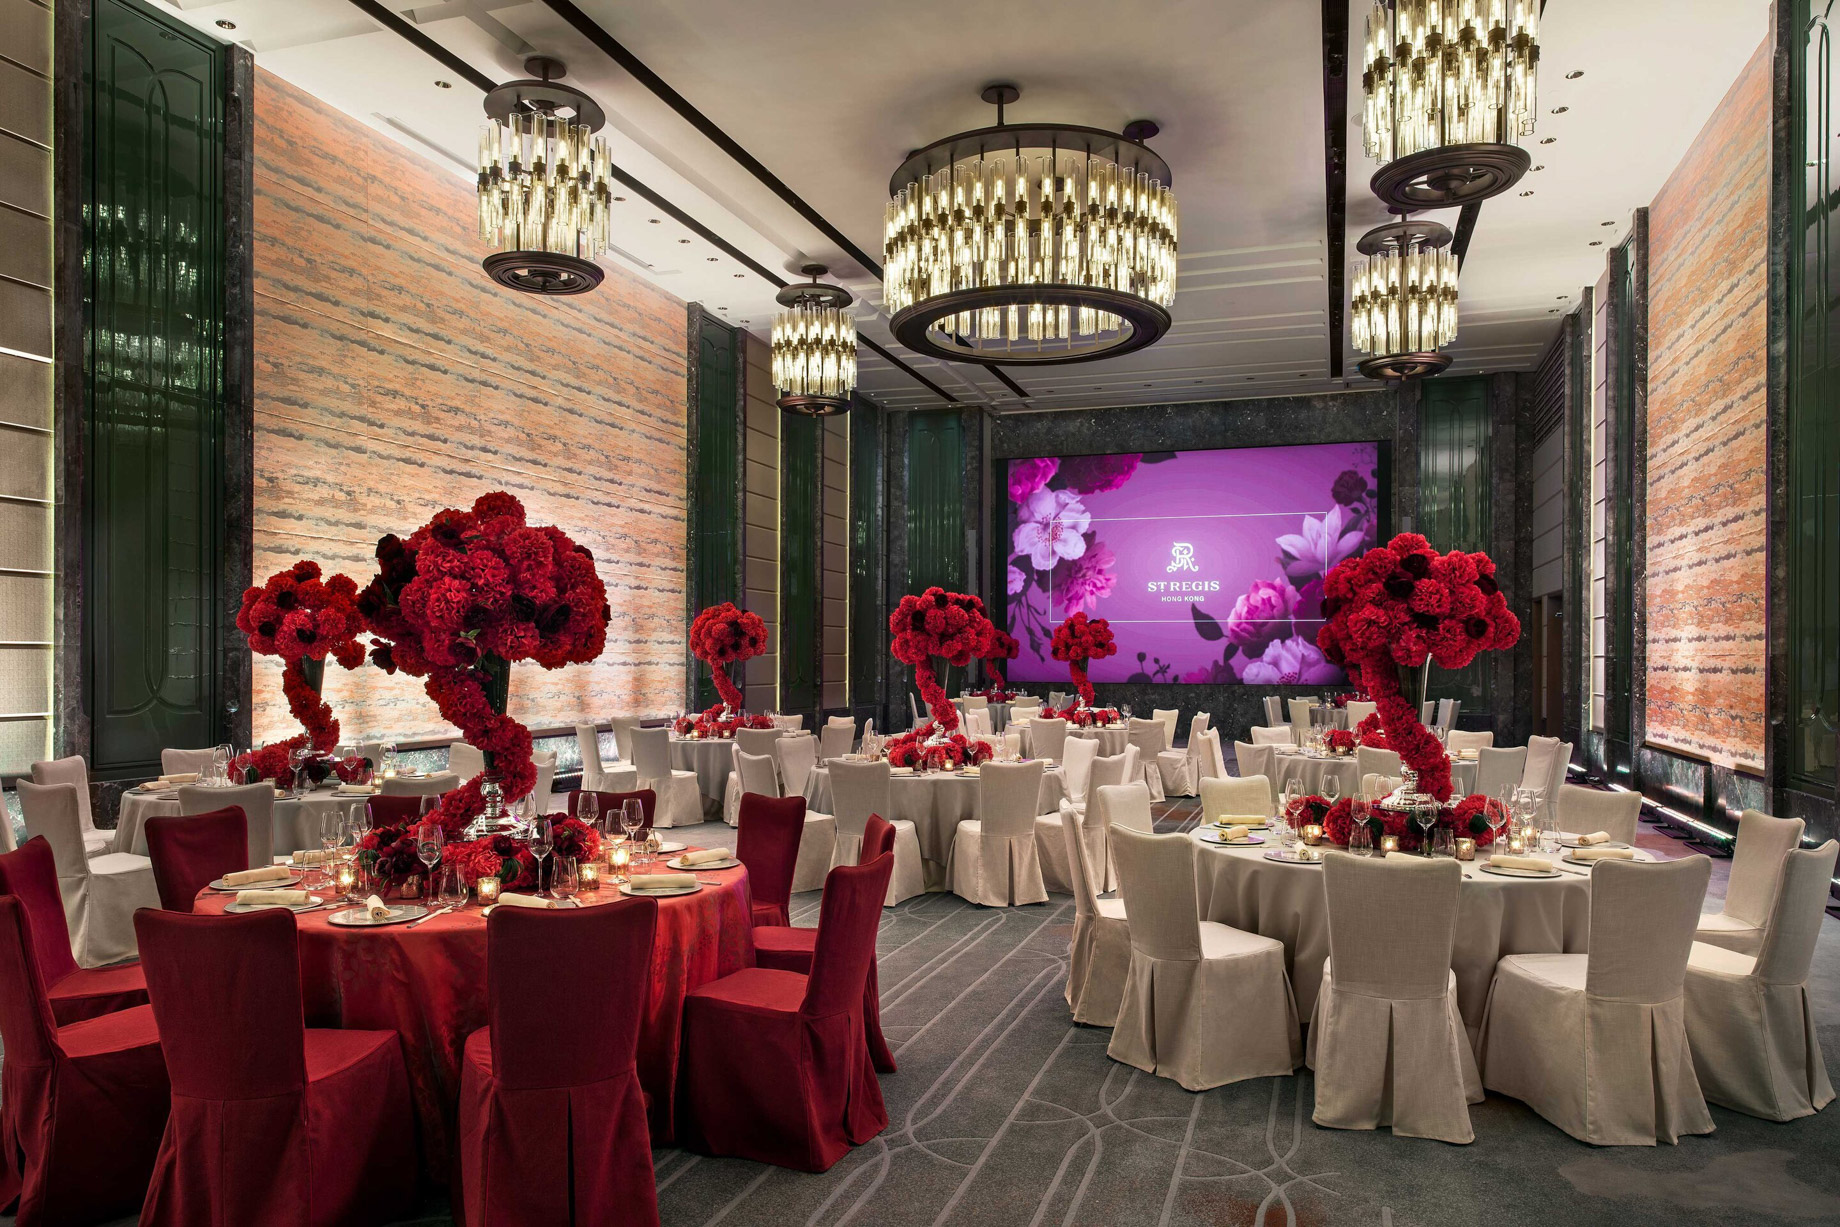 The St. Regis Hong Kong Hotel – Wan Chai, Hong Kong – Astor Ballroom Banquet Setup